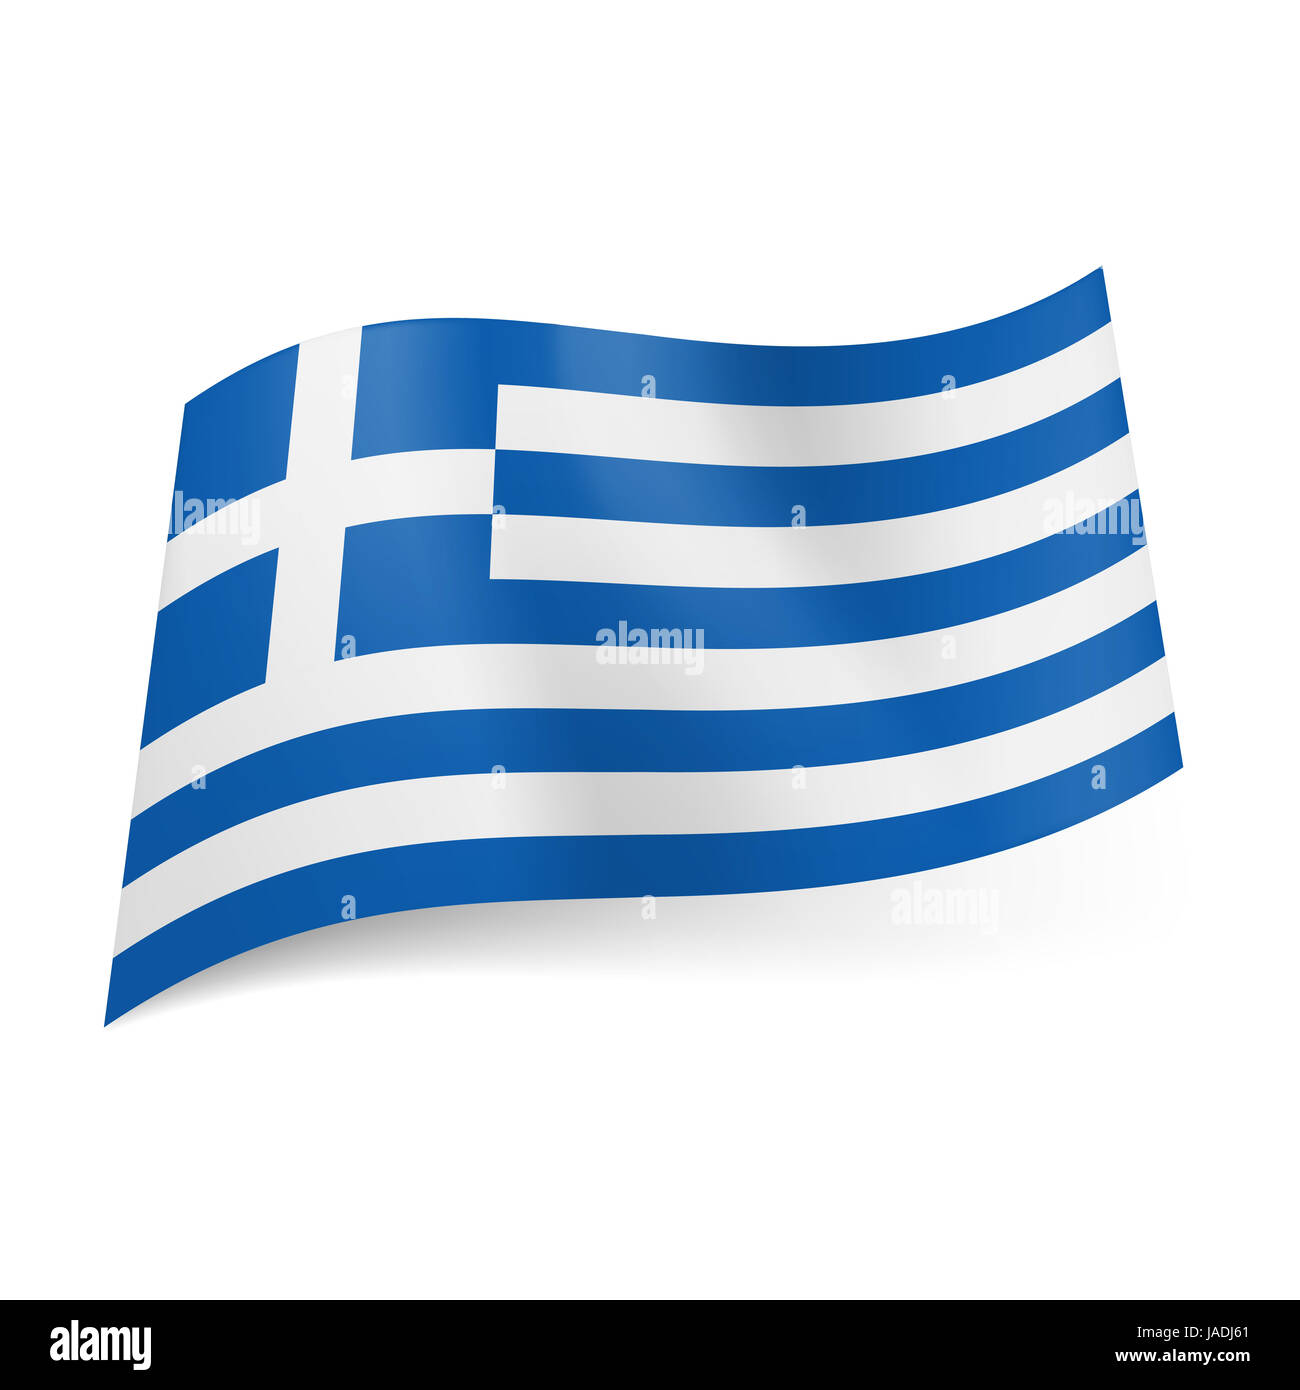 Bandiera nazionale della Grecia: blu e bianco strisce orizzontali con la  croce bianca in quadrato blu nell'angolo in alto a sinistra Foto stock -  Alamy